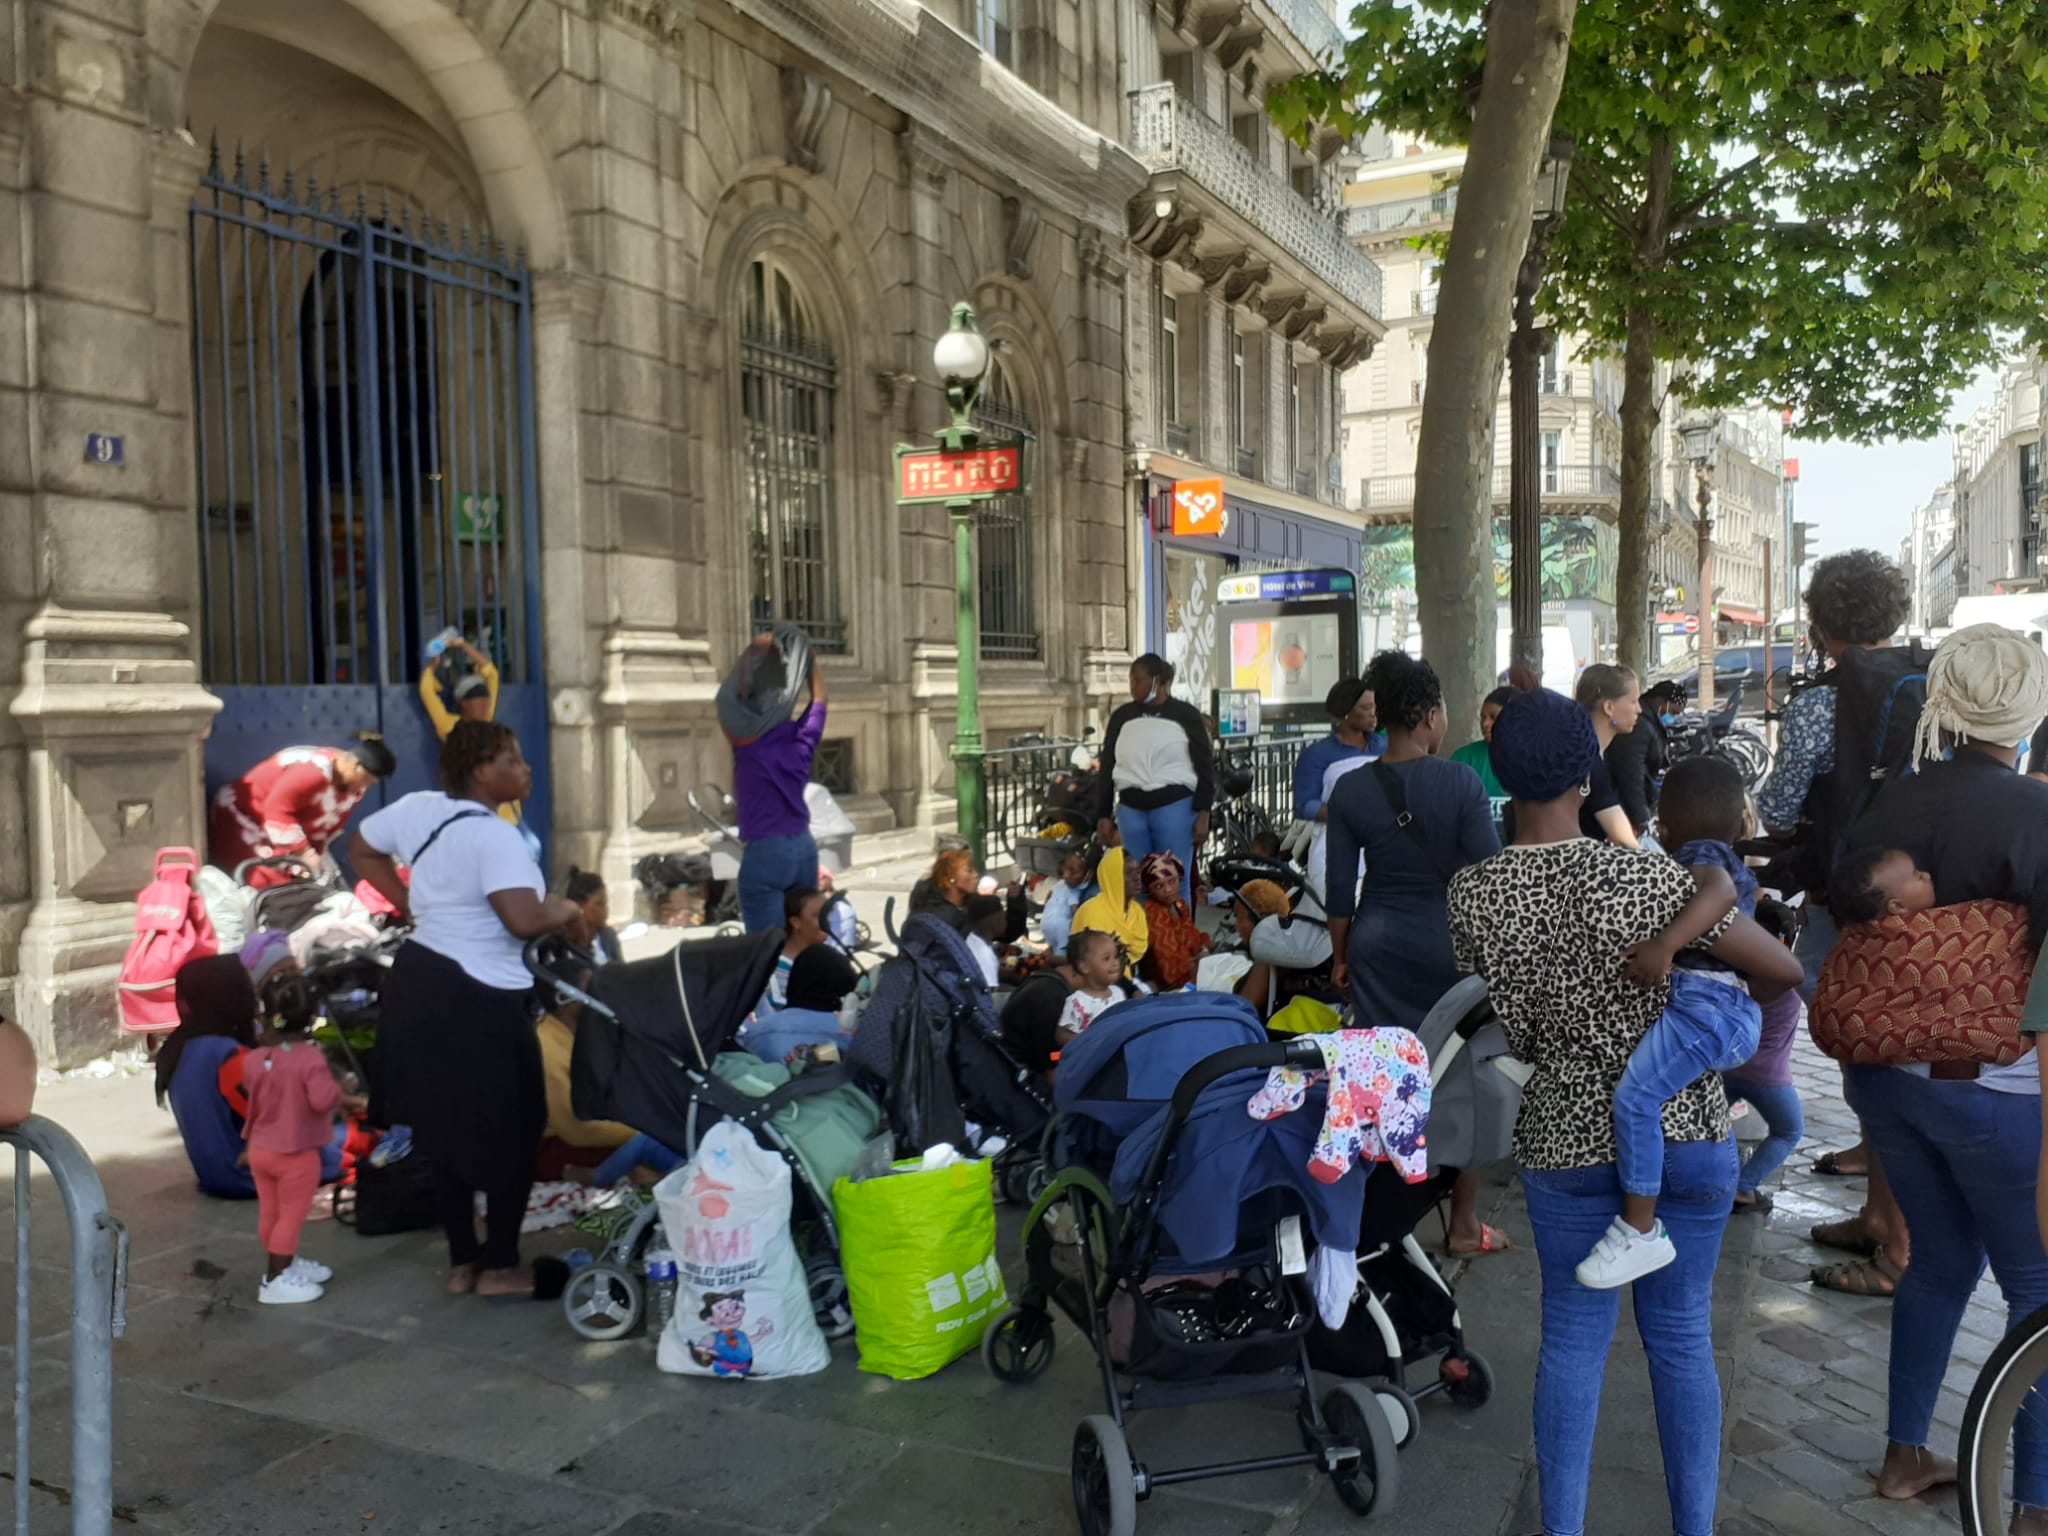 Des réfugiés africains se sont installés mardi 14 juin sur le parvis de l'Hôtel-de-Ville de Paris (IVe) après avoir été expulsés de leur campement. DR